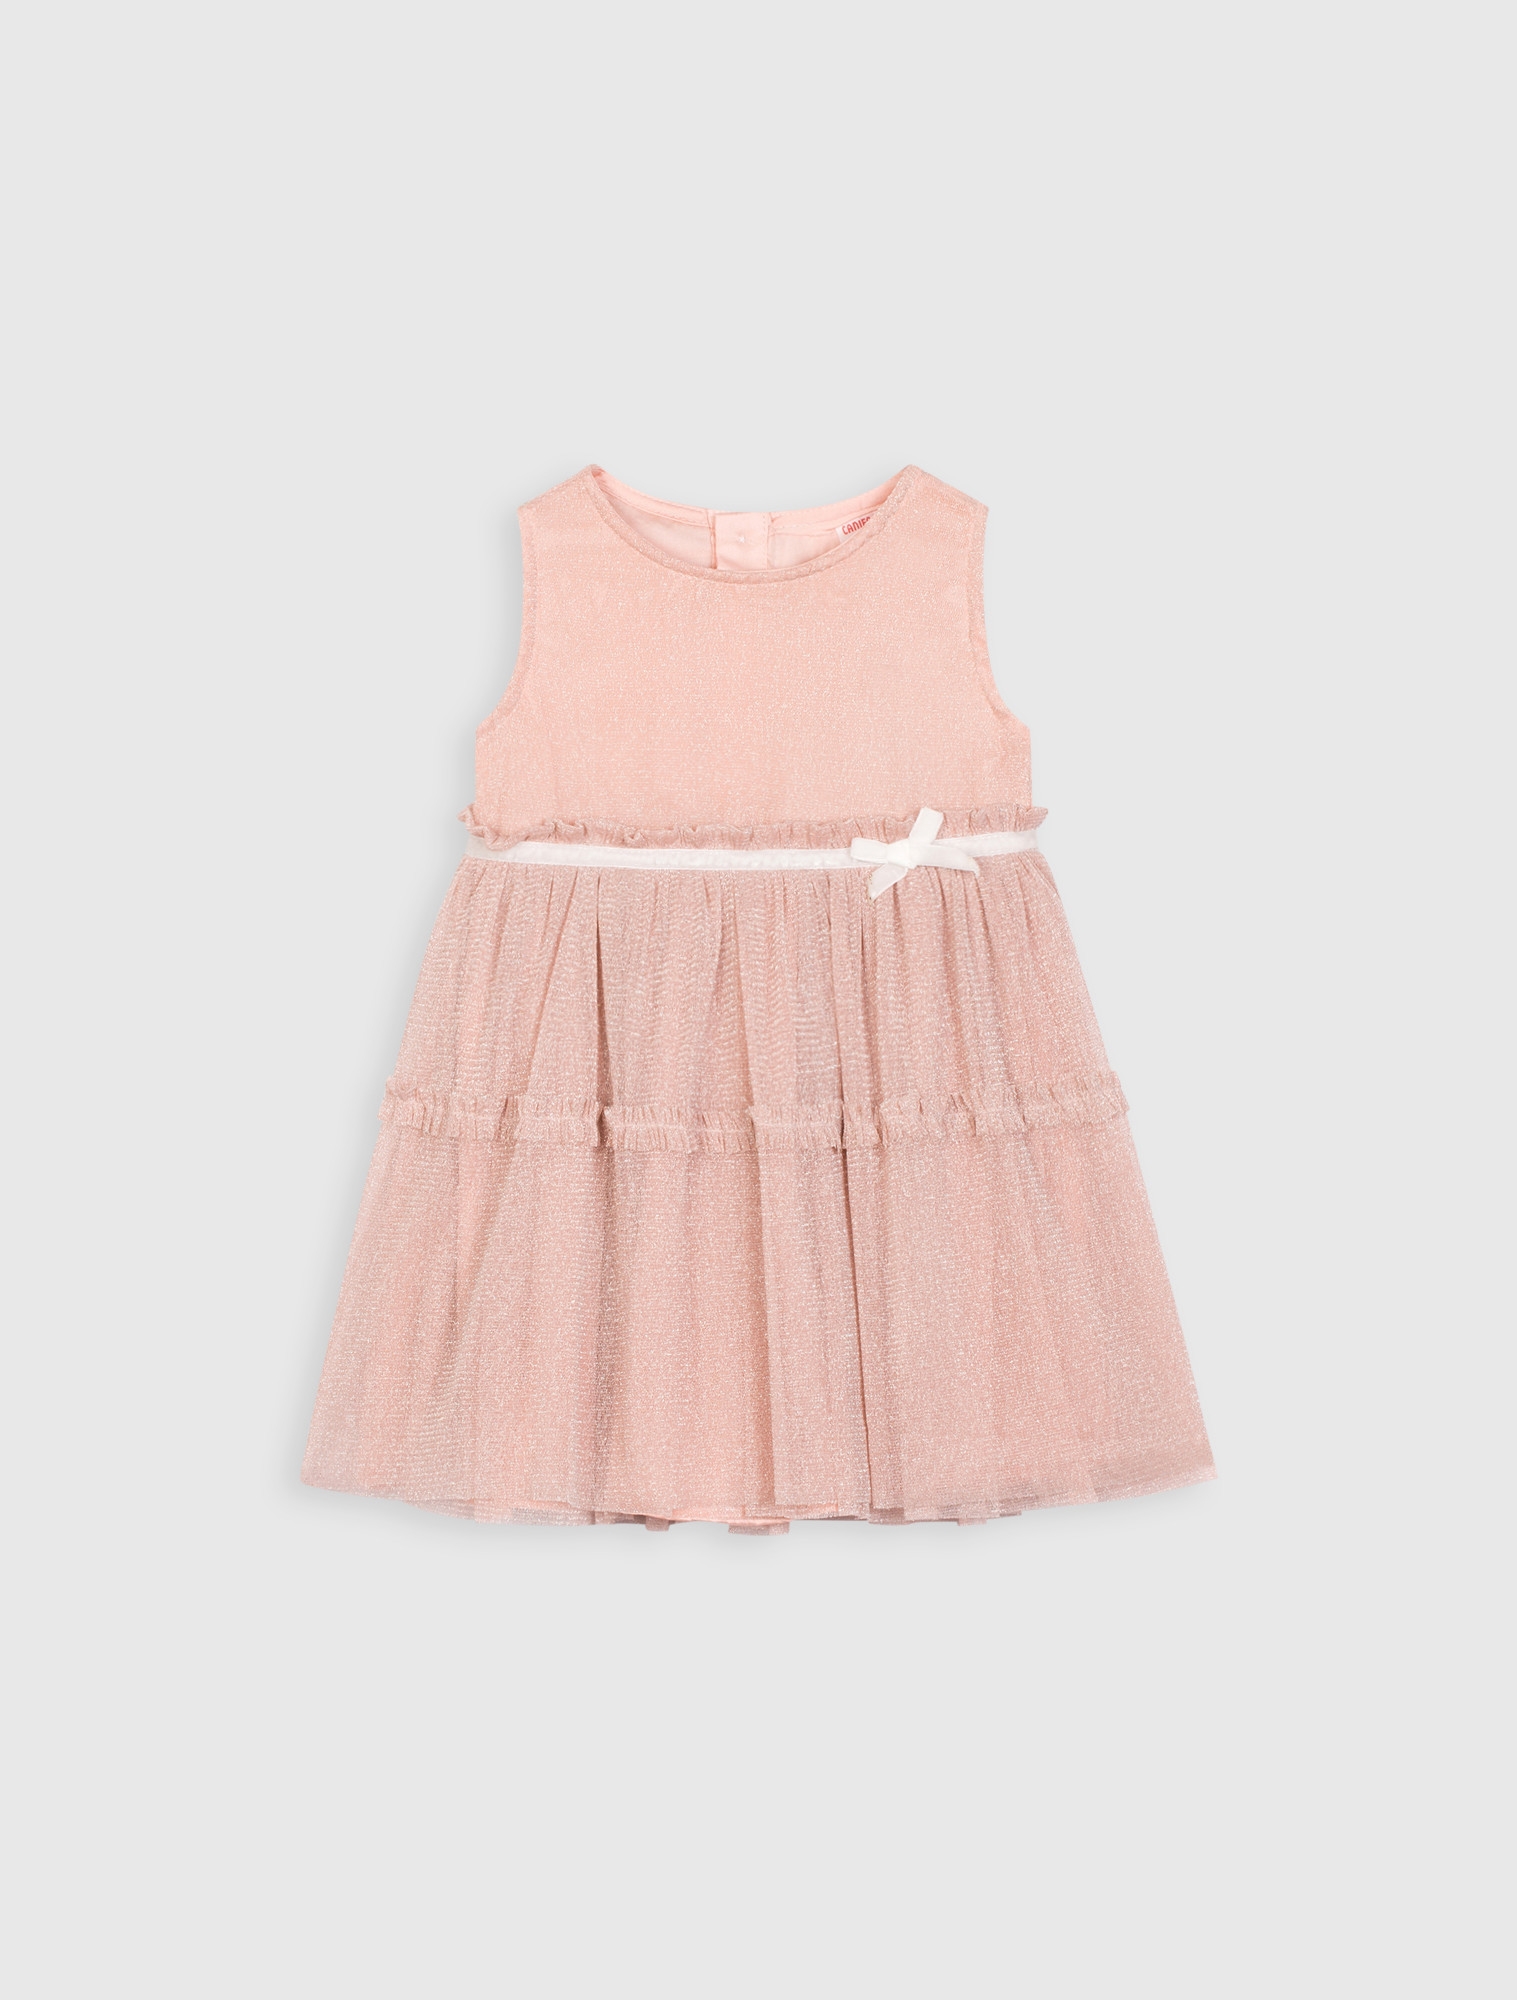 Quần áo bé gái: Đầm công chúa cho bé gái sơ sinh hàng xuất xịn từ 7kg đến  9kg màu trắng hồng kết kim sa